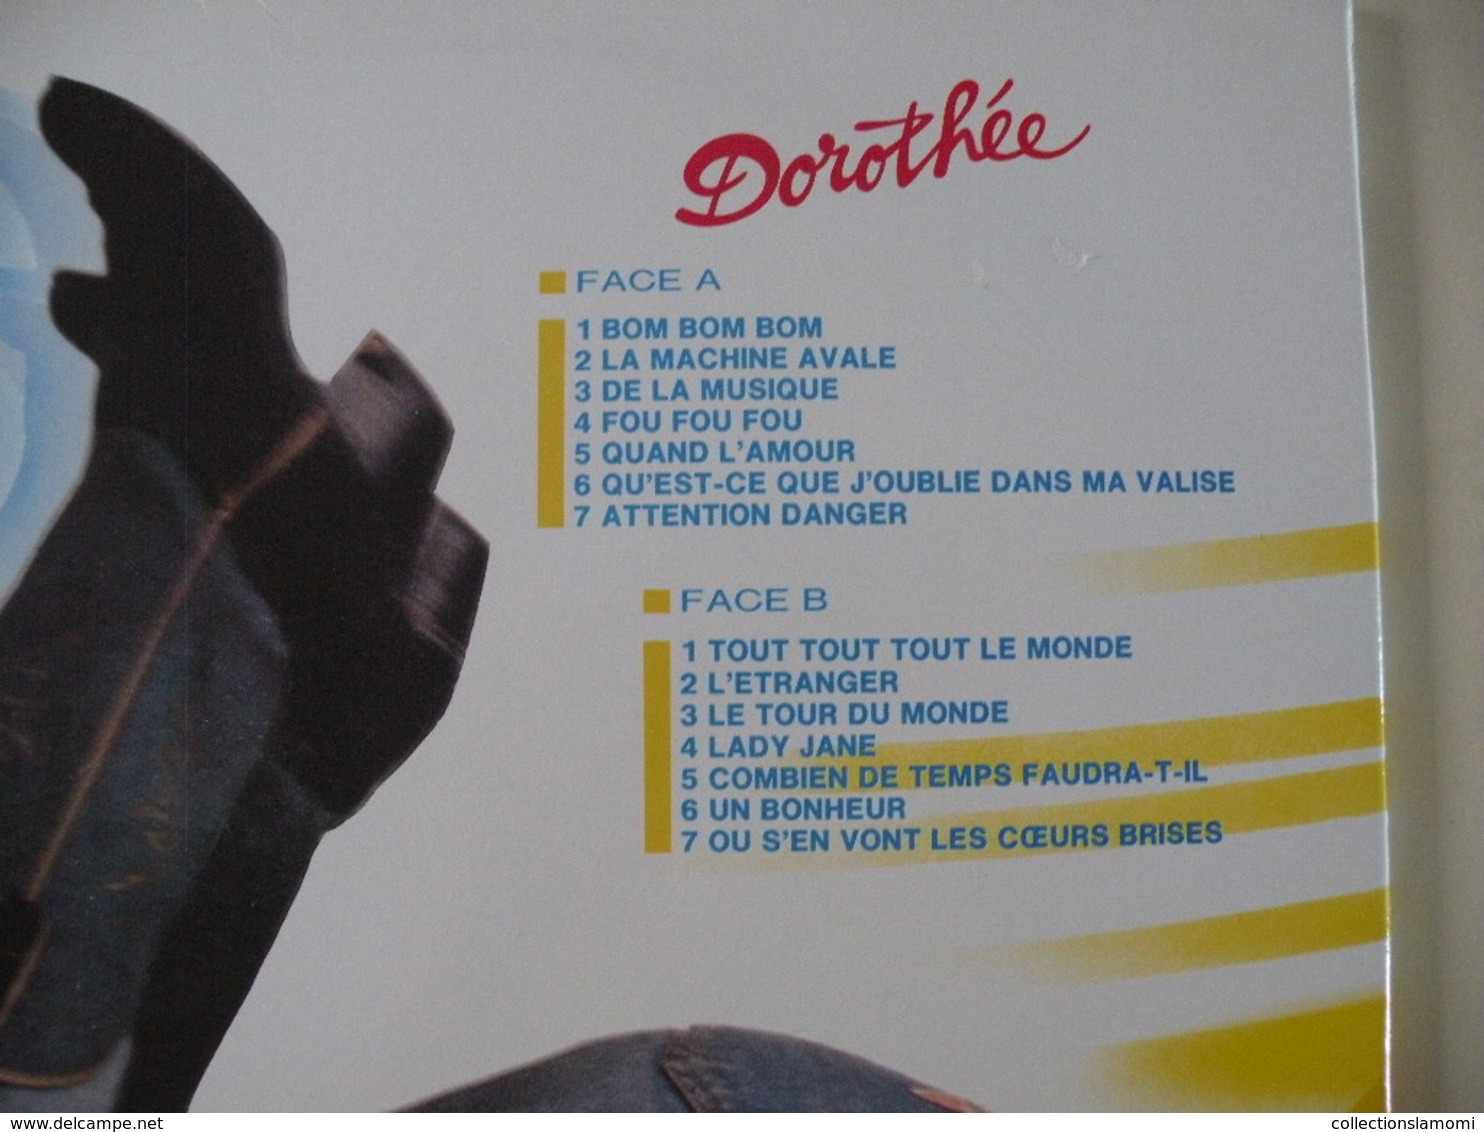 Dorothée -(Titres sur photos)- Vinyle 33 T LP